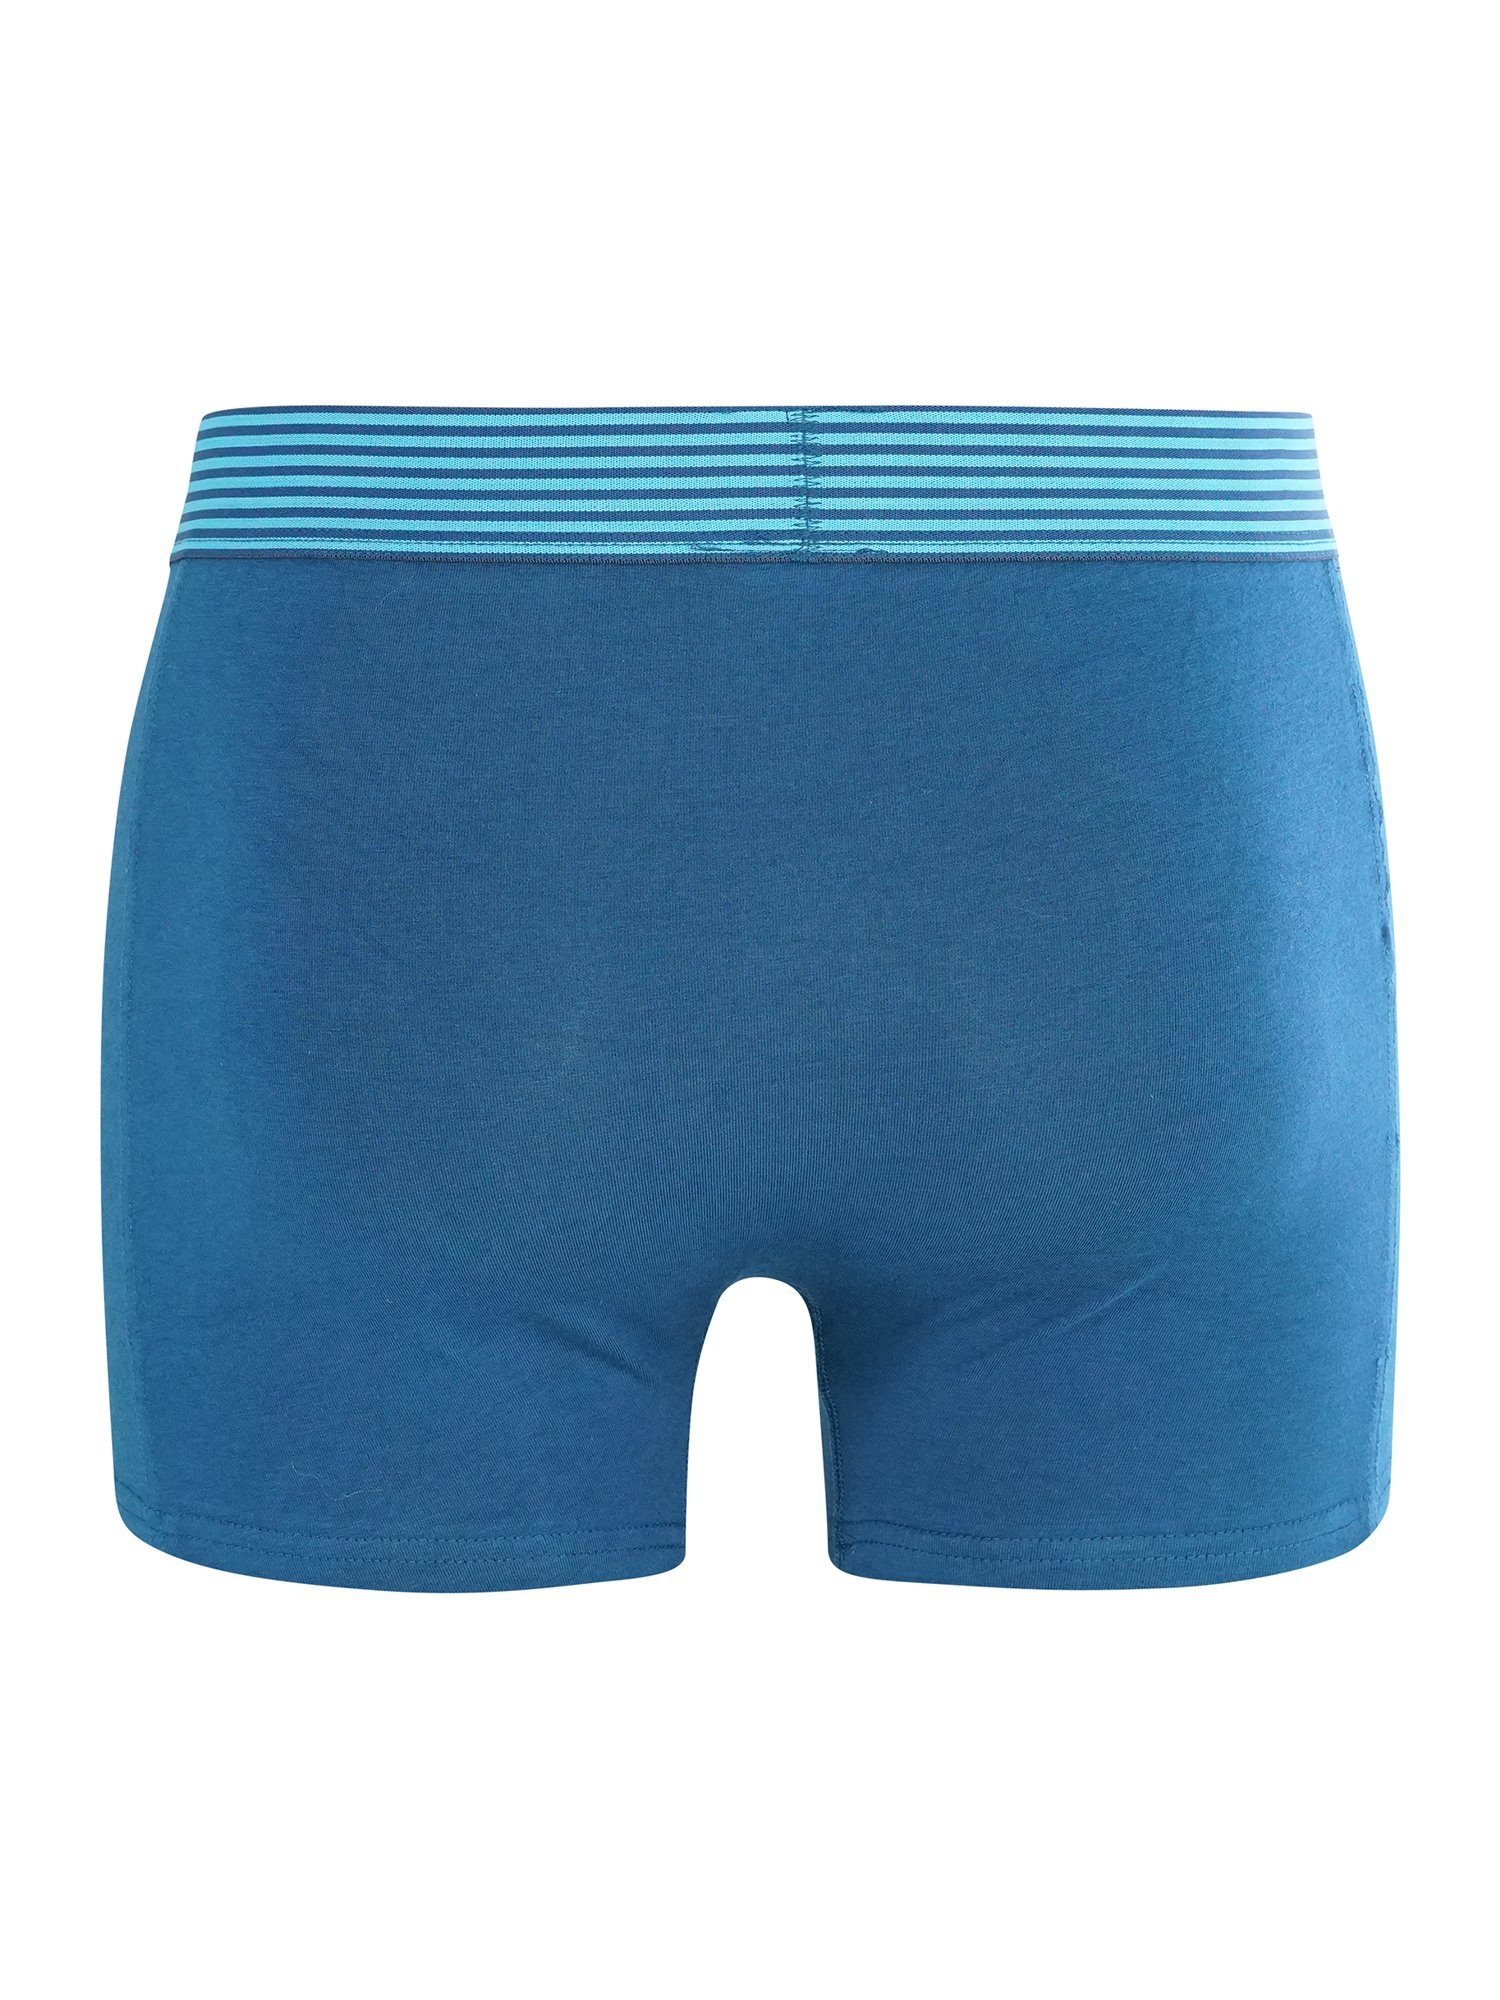 Pants Retro FASHION grau/blau 2-Pack CR7